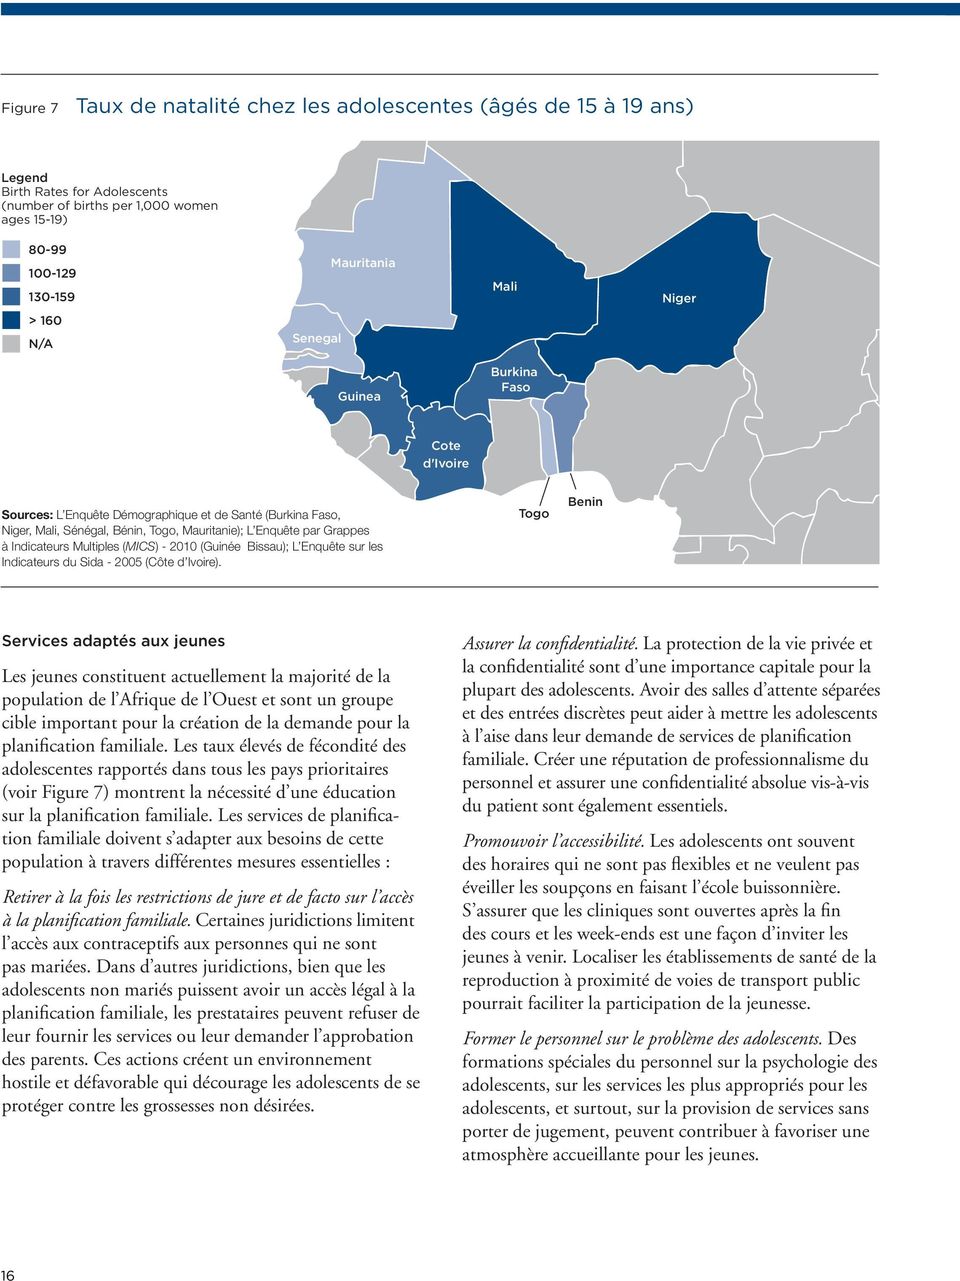 Multiples (MICS) - 2010 (Guinée Bissau); L Enquête sur les Indicateurs du Sida - 2005 (Côte d Ivoire).